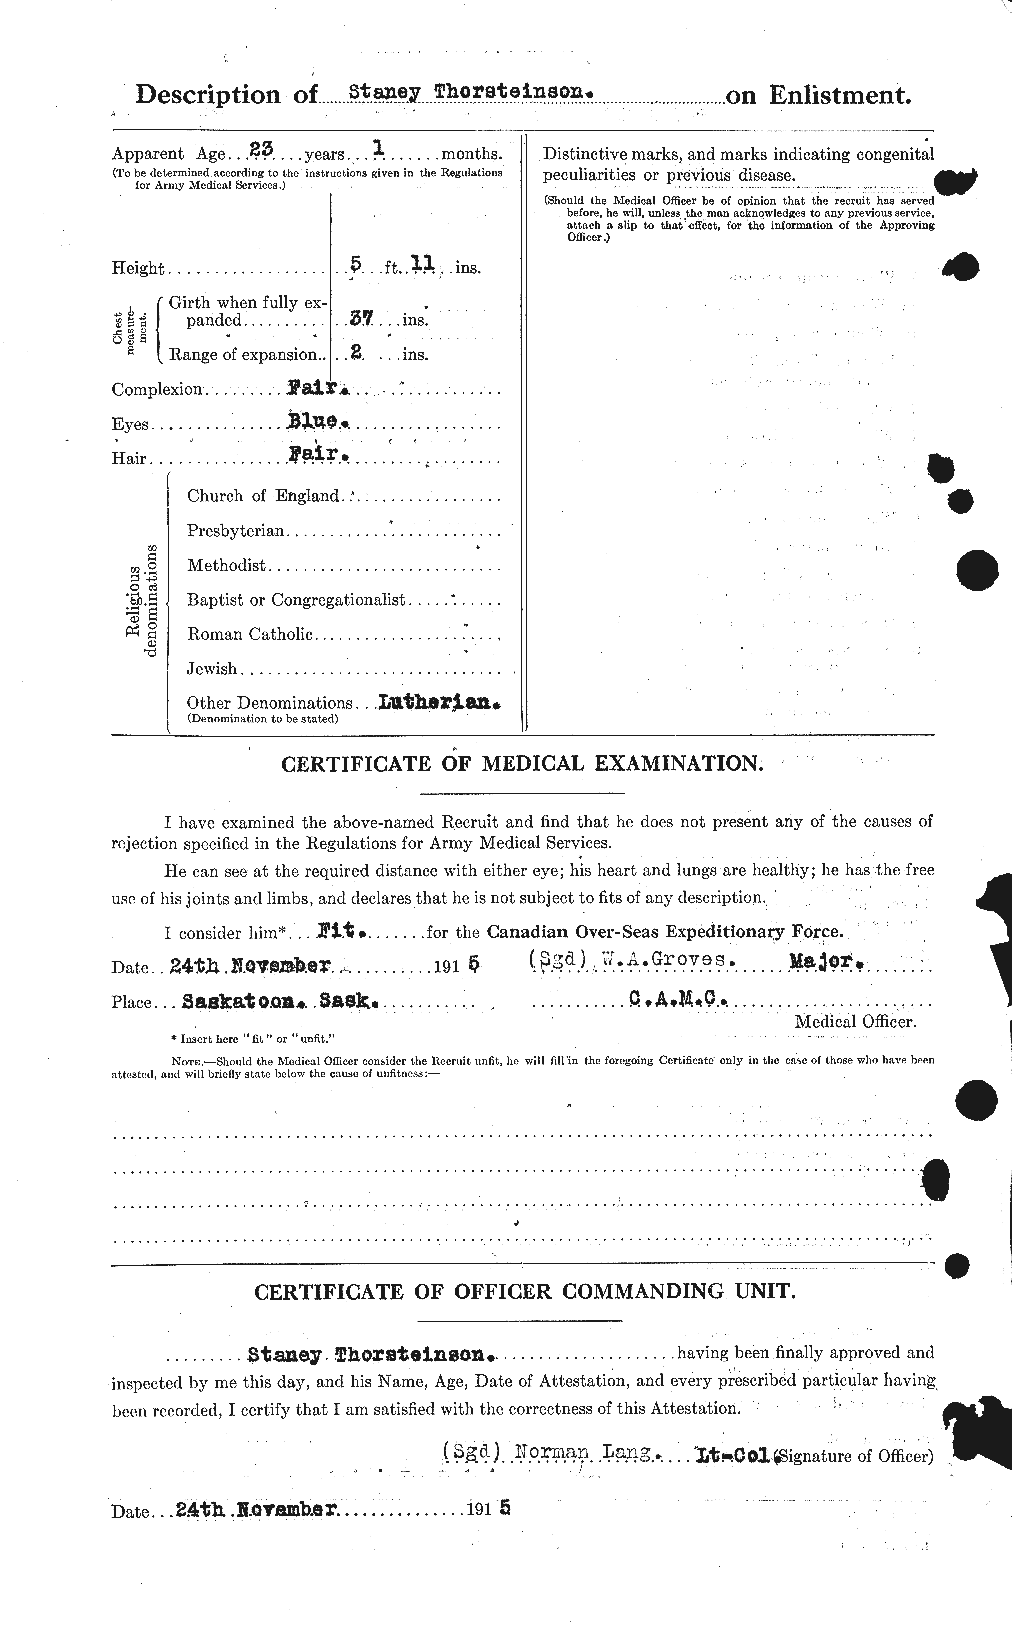 Dossiers du Personnel de la Première Guerre mondiale - CEC 633867b